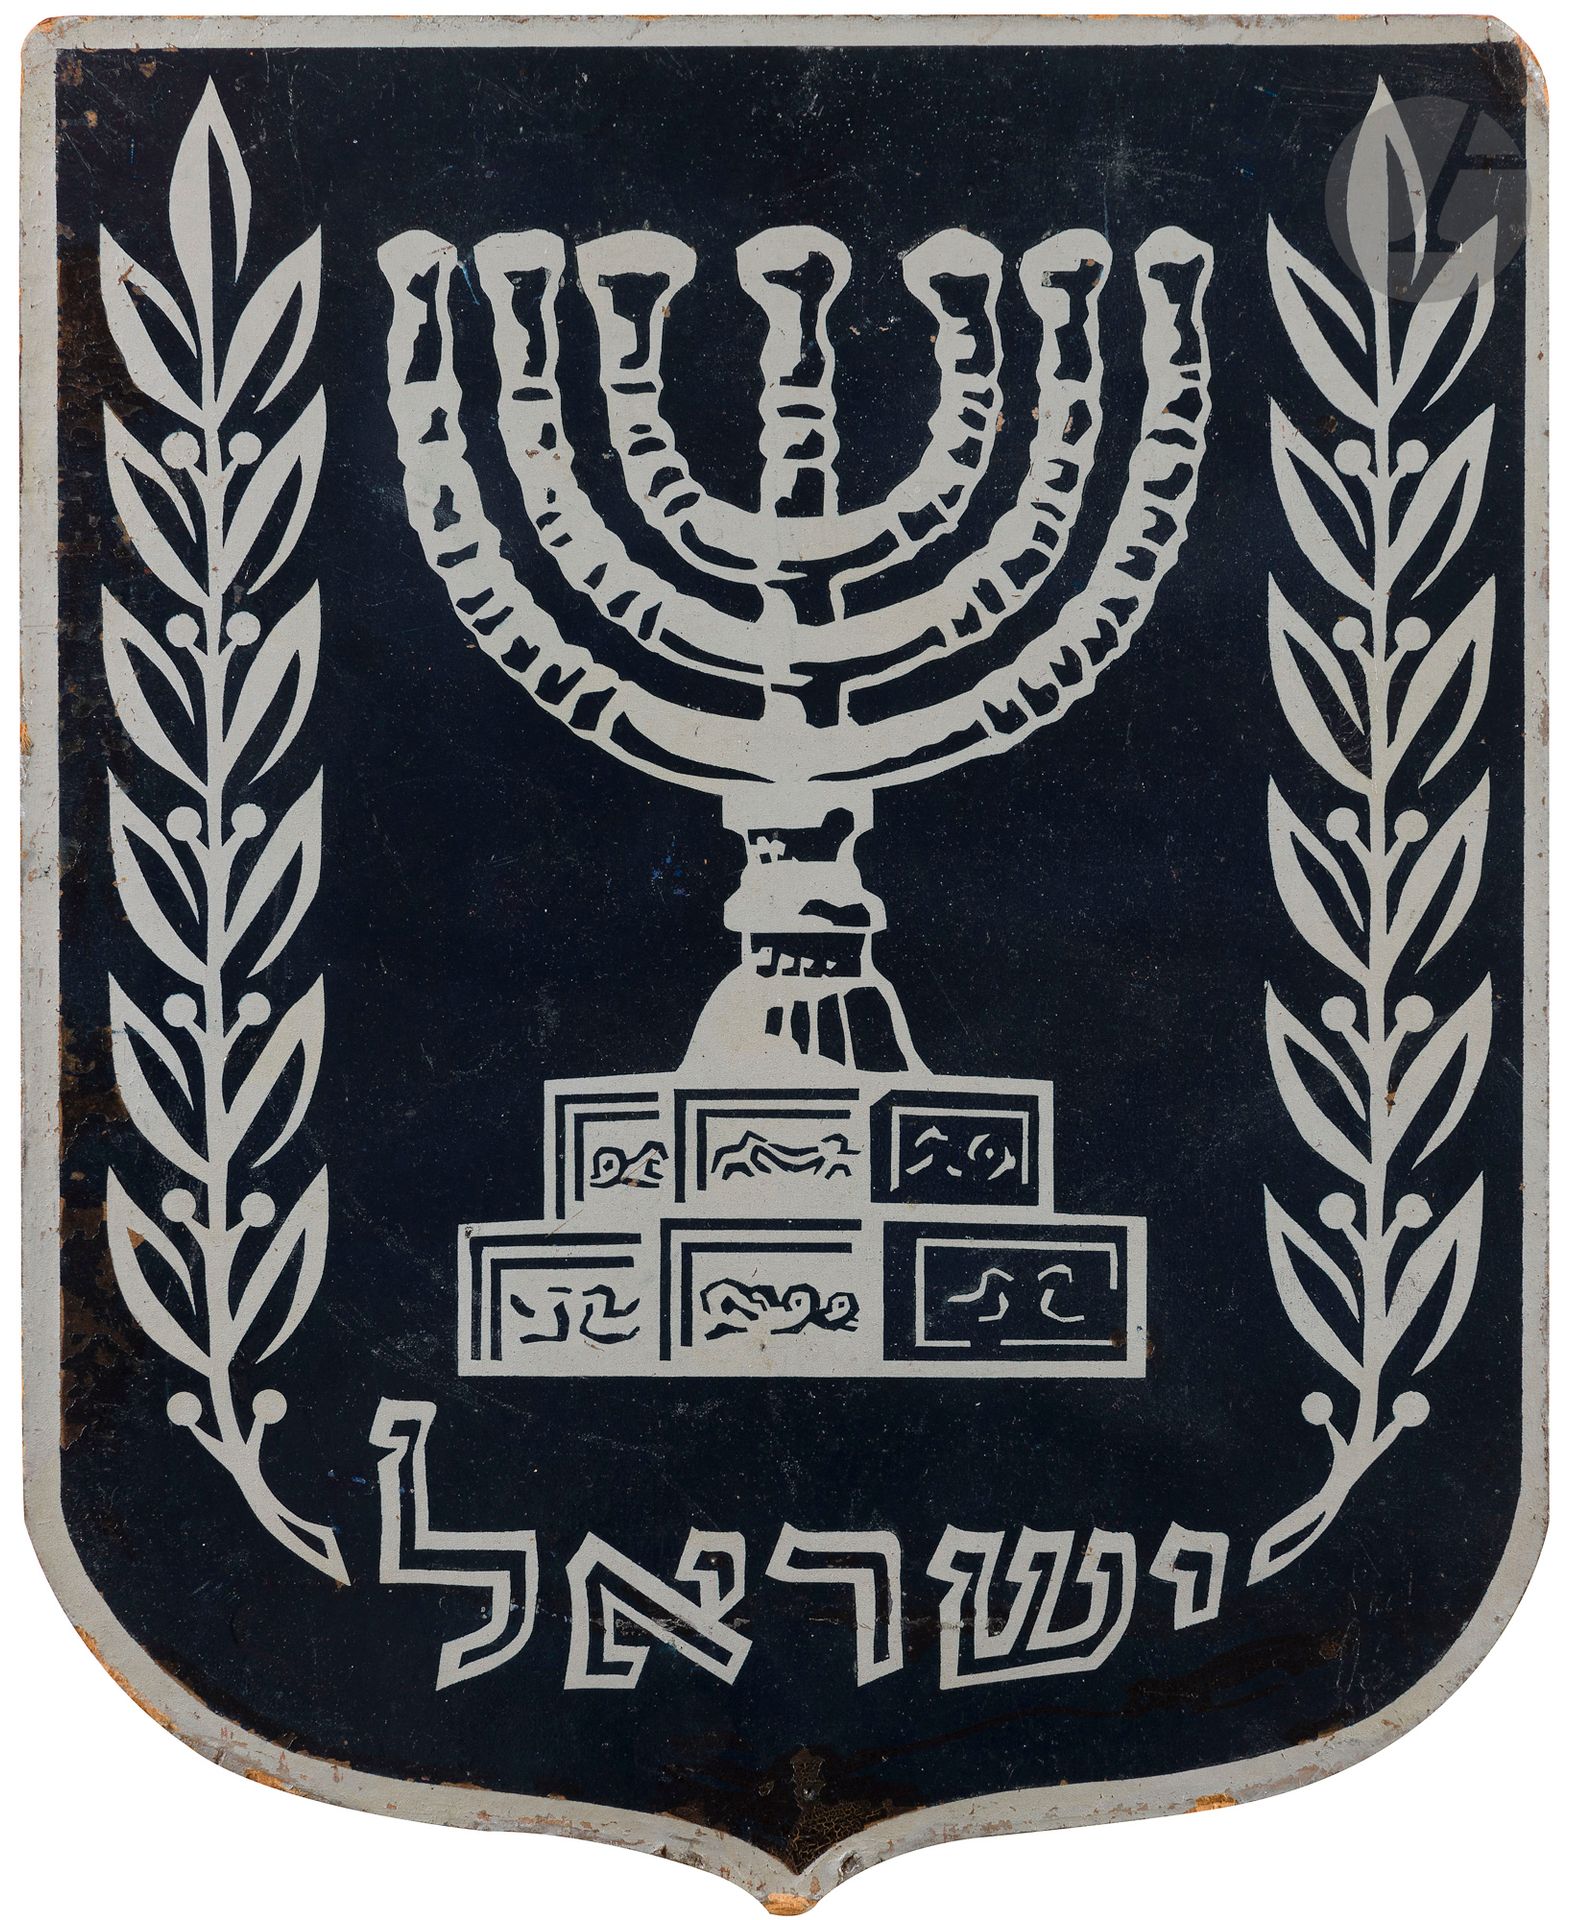 Null [ISRAEL]
Wappen des Staates Israel.
Schablone auf Isorel.
Circa 1950-1960. &hellip;